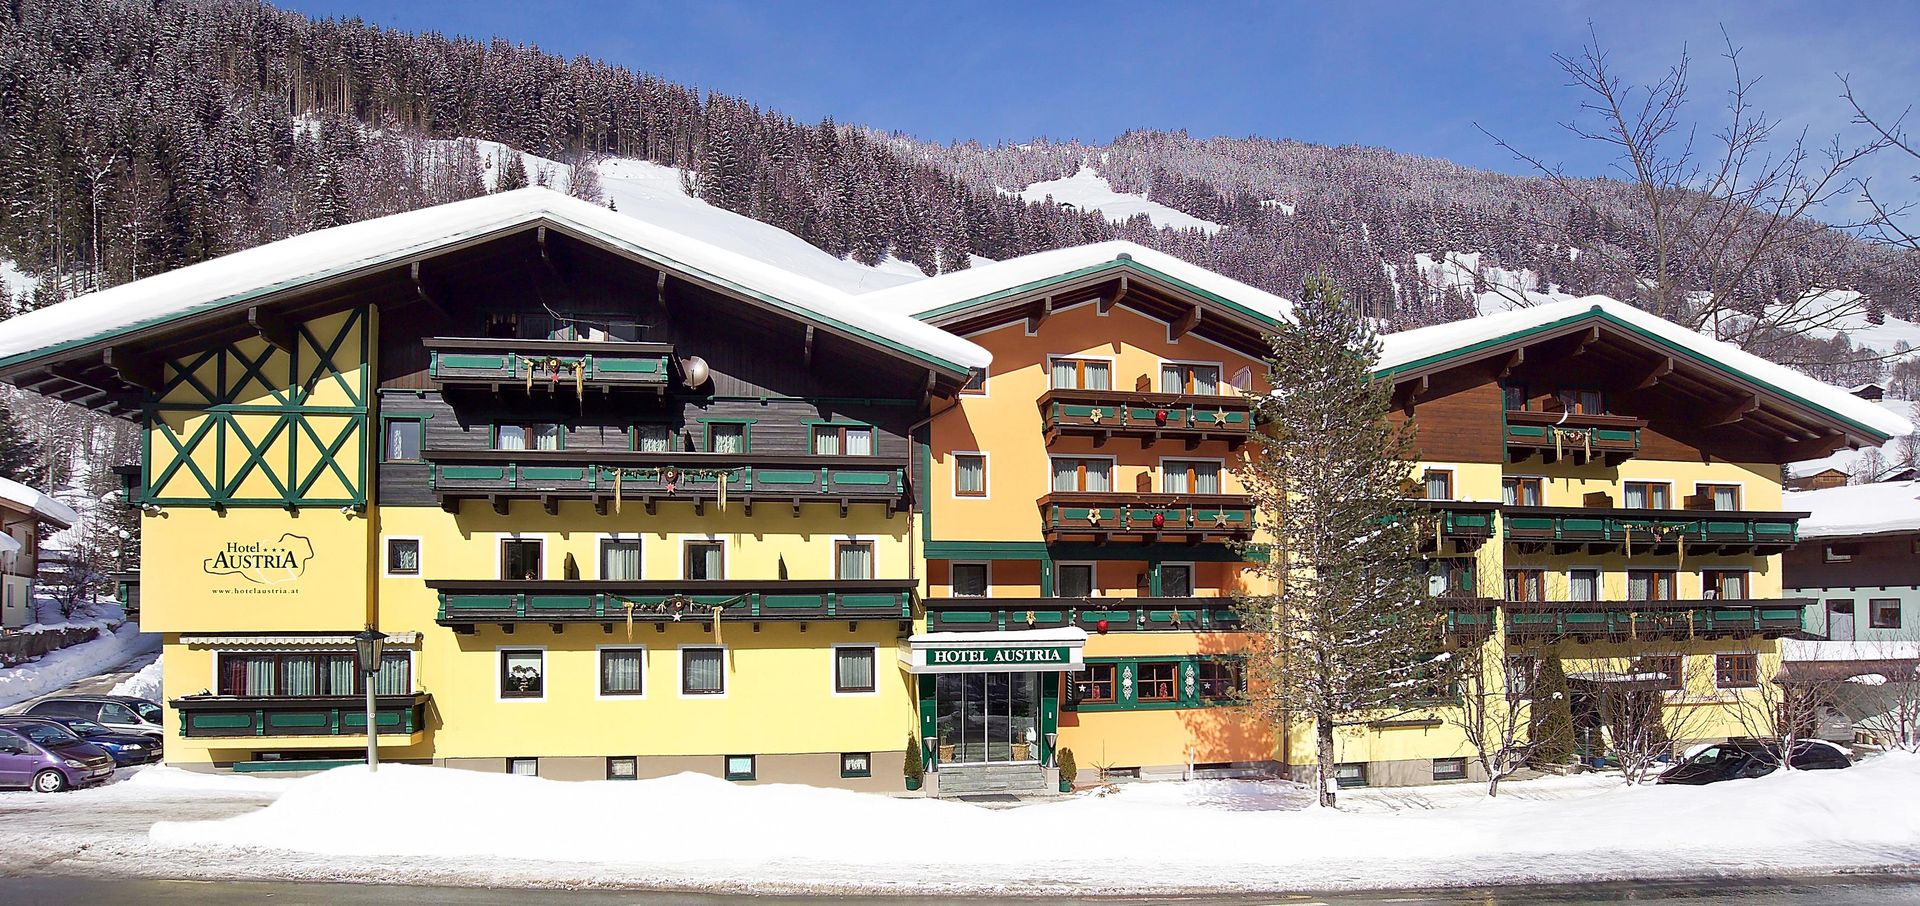 Meer info over Hotel Austria Dependance  bij Wintertrex